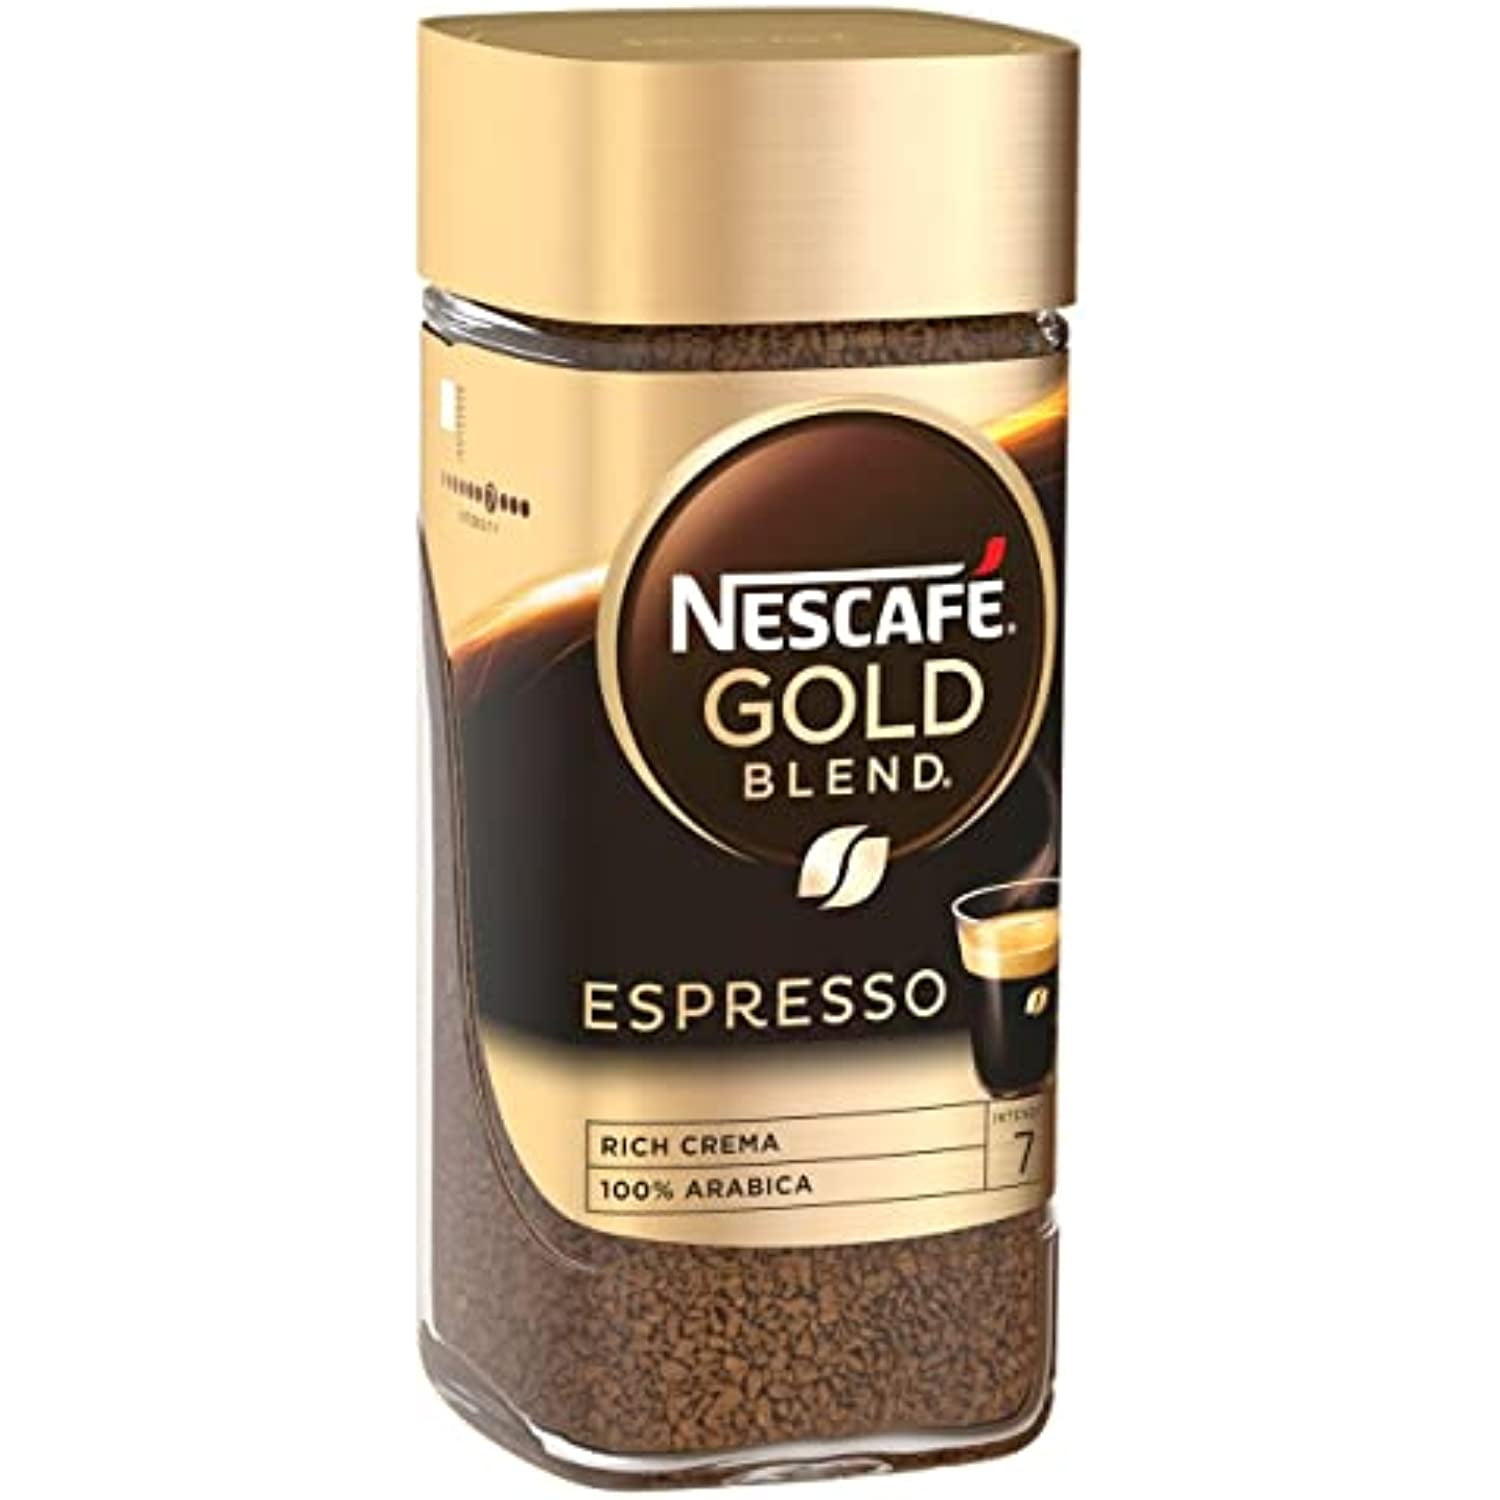 Nescafe Gold Expresso Arabica Coffee 95g 100